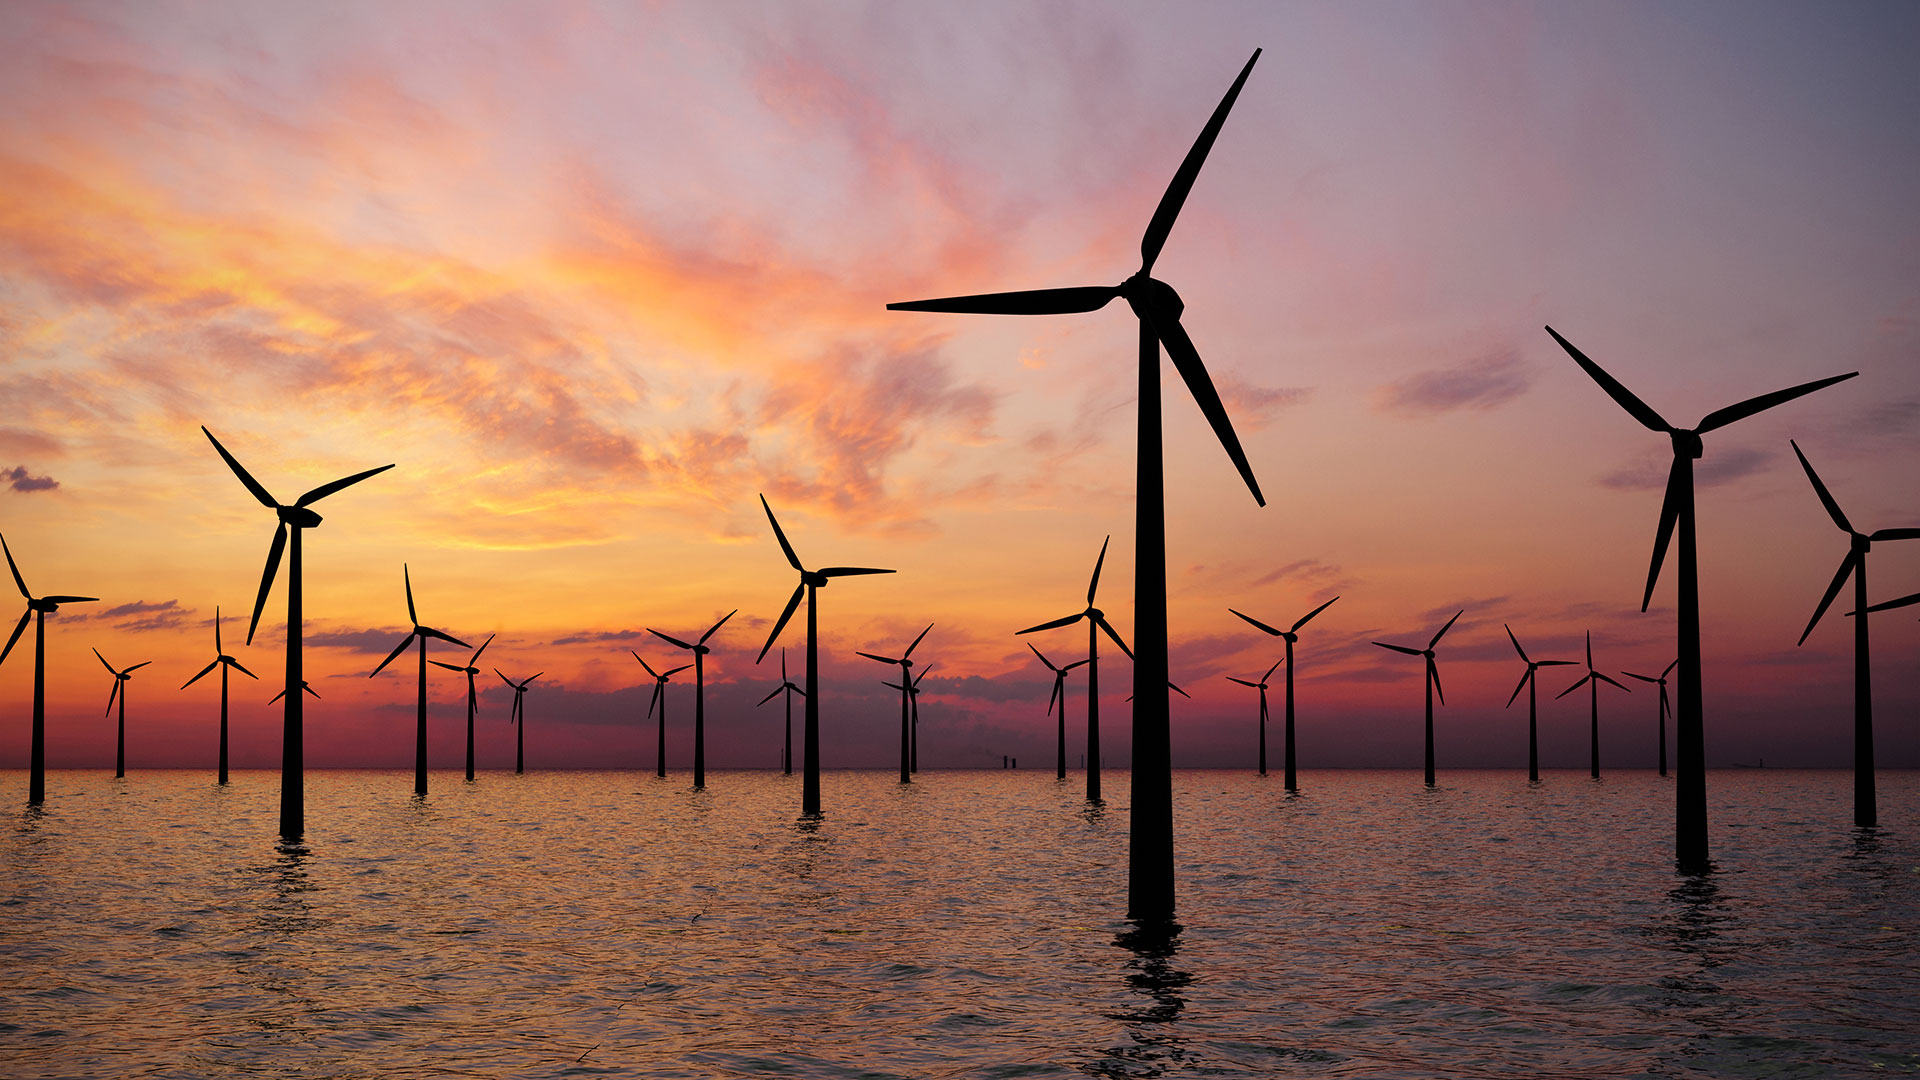 Megatrend Offshore&#8209;Windkraft: Diese drei Aktien profitieren vom Ausbau der Windenergie auf hoher See (Foto: Shutterstock)